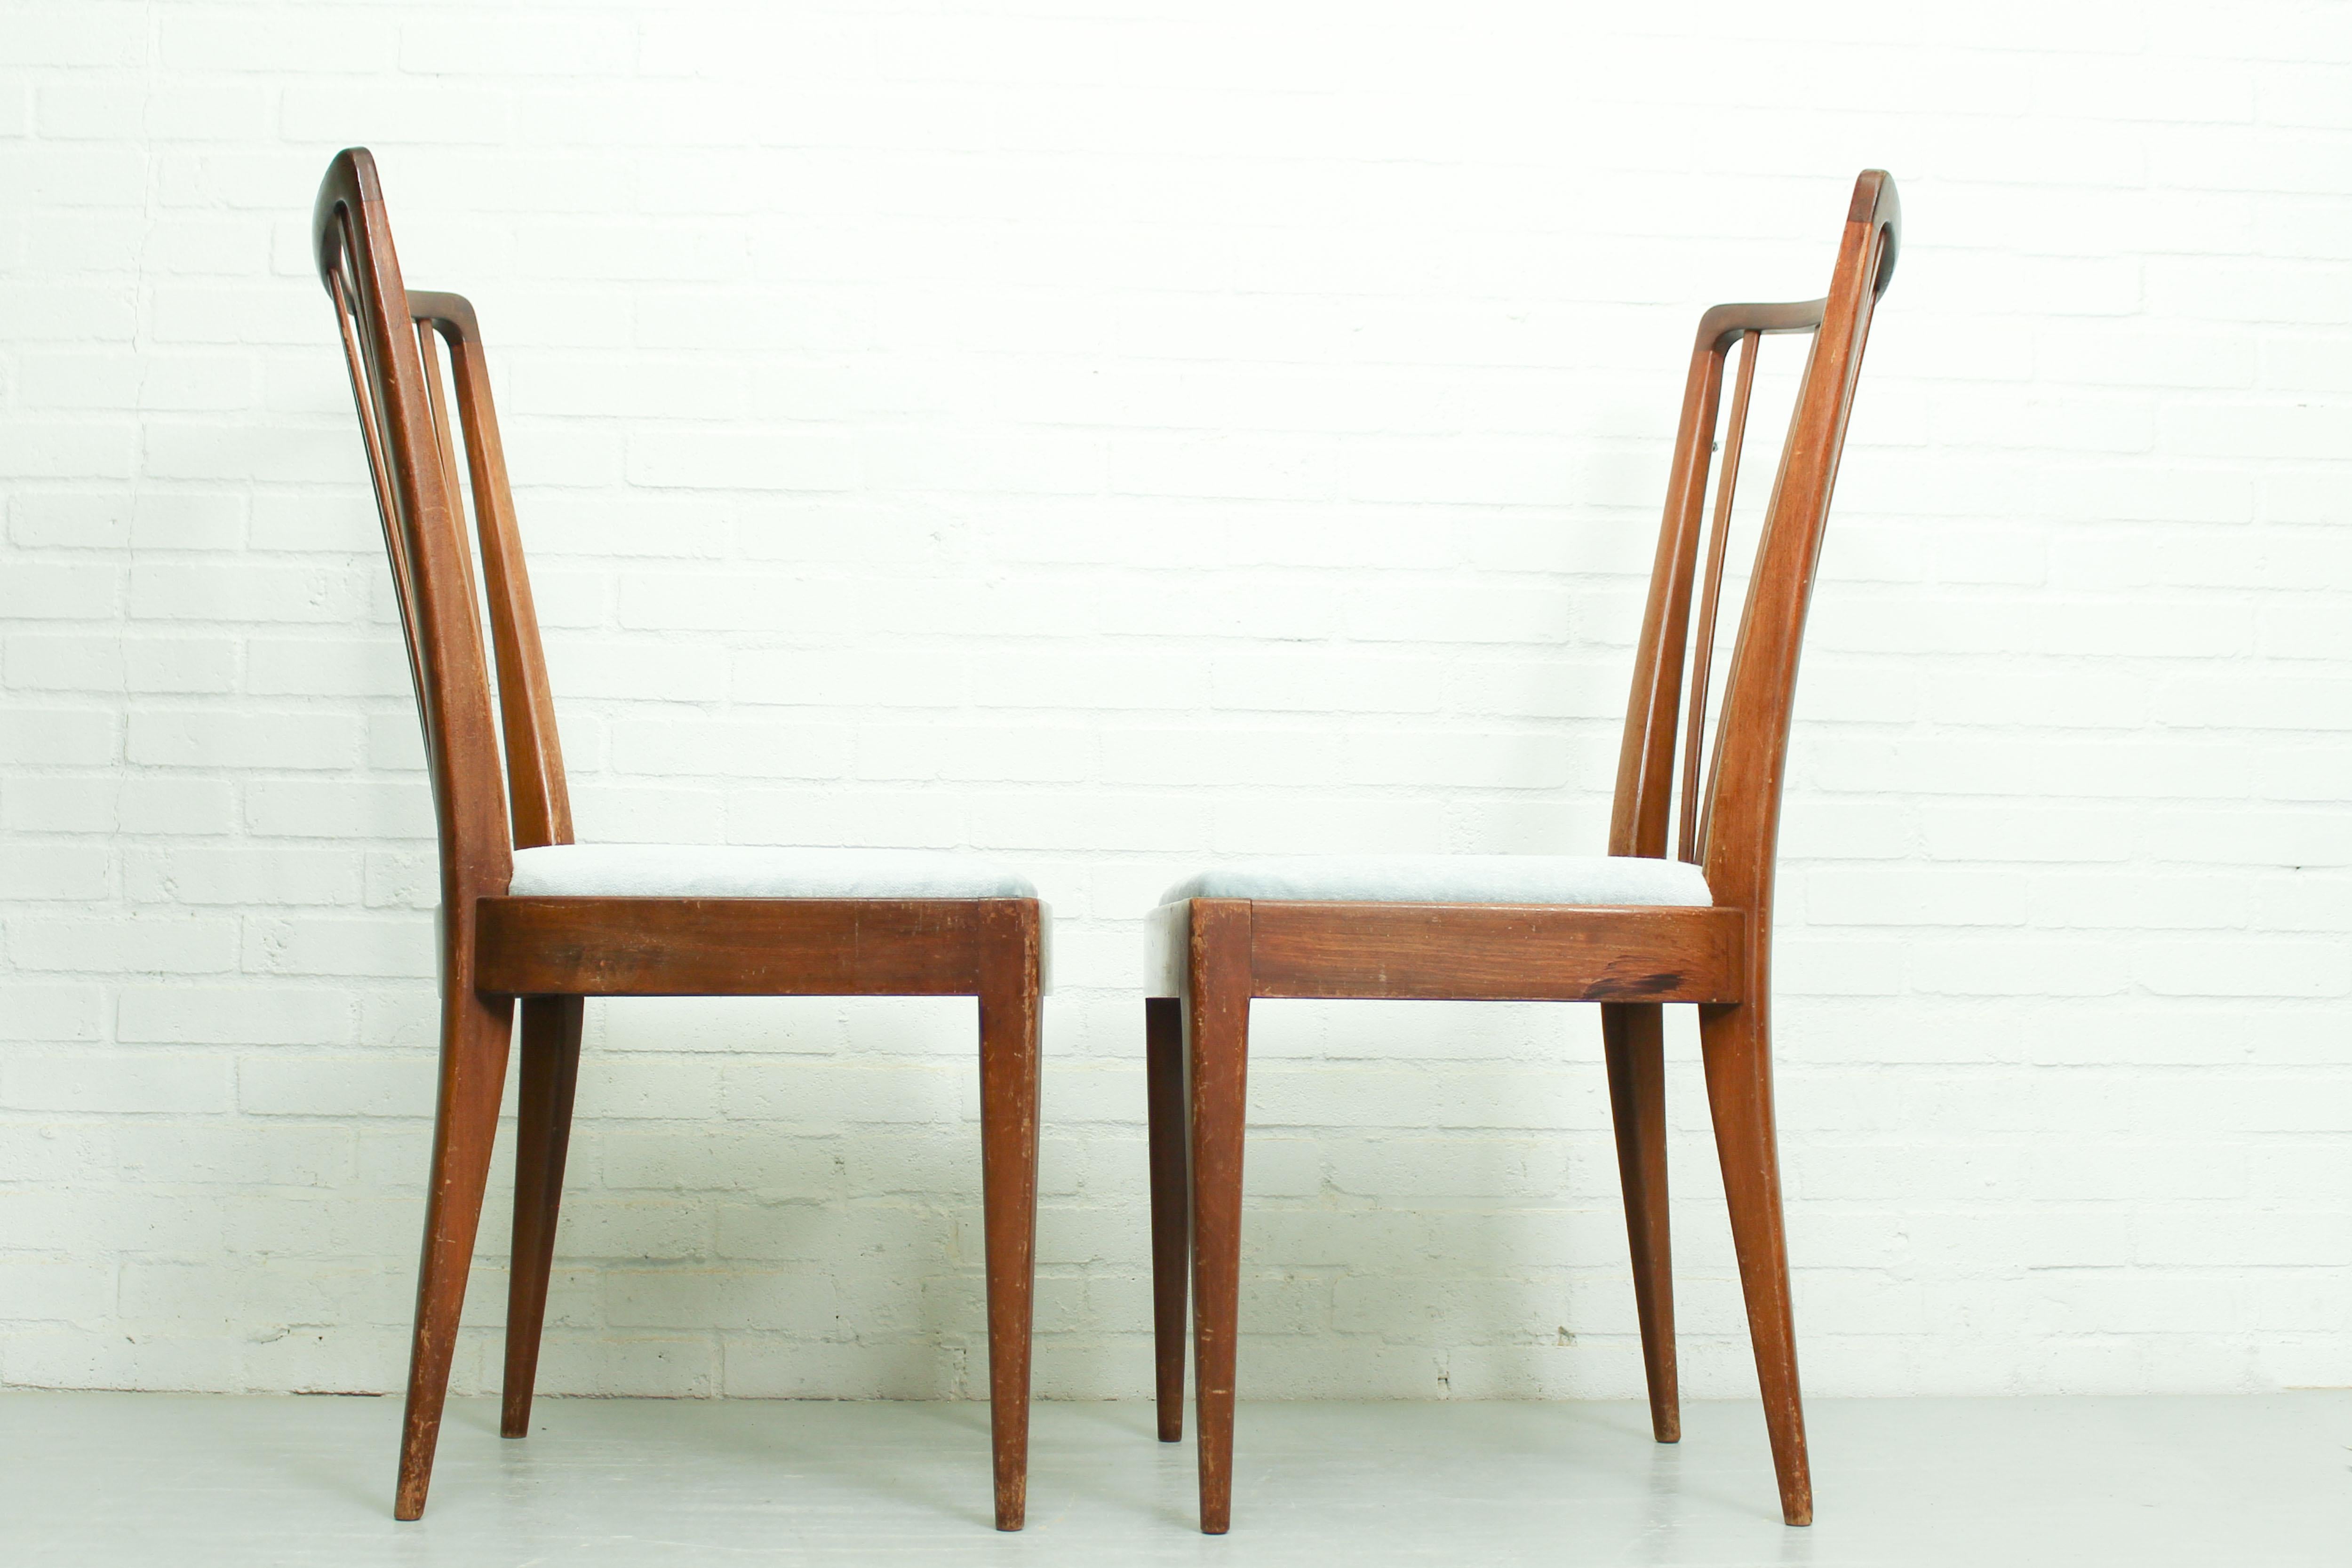 Satz von zwei Esszimmerstühlen, entworfen von Abraham A. Patijn für Zijlstra Furniture in den Niederlanden. Die Stühle sind aus Nussbaumholz gefertigt und mit einem schönen hellblauen Mohair-Stoff gepolstert. Dieser Entwurf ist ähnlich wie die